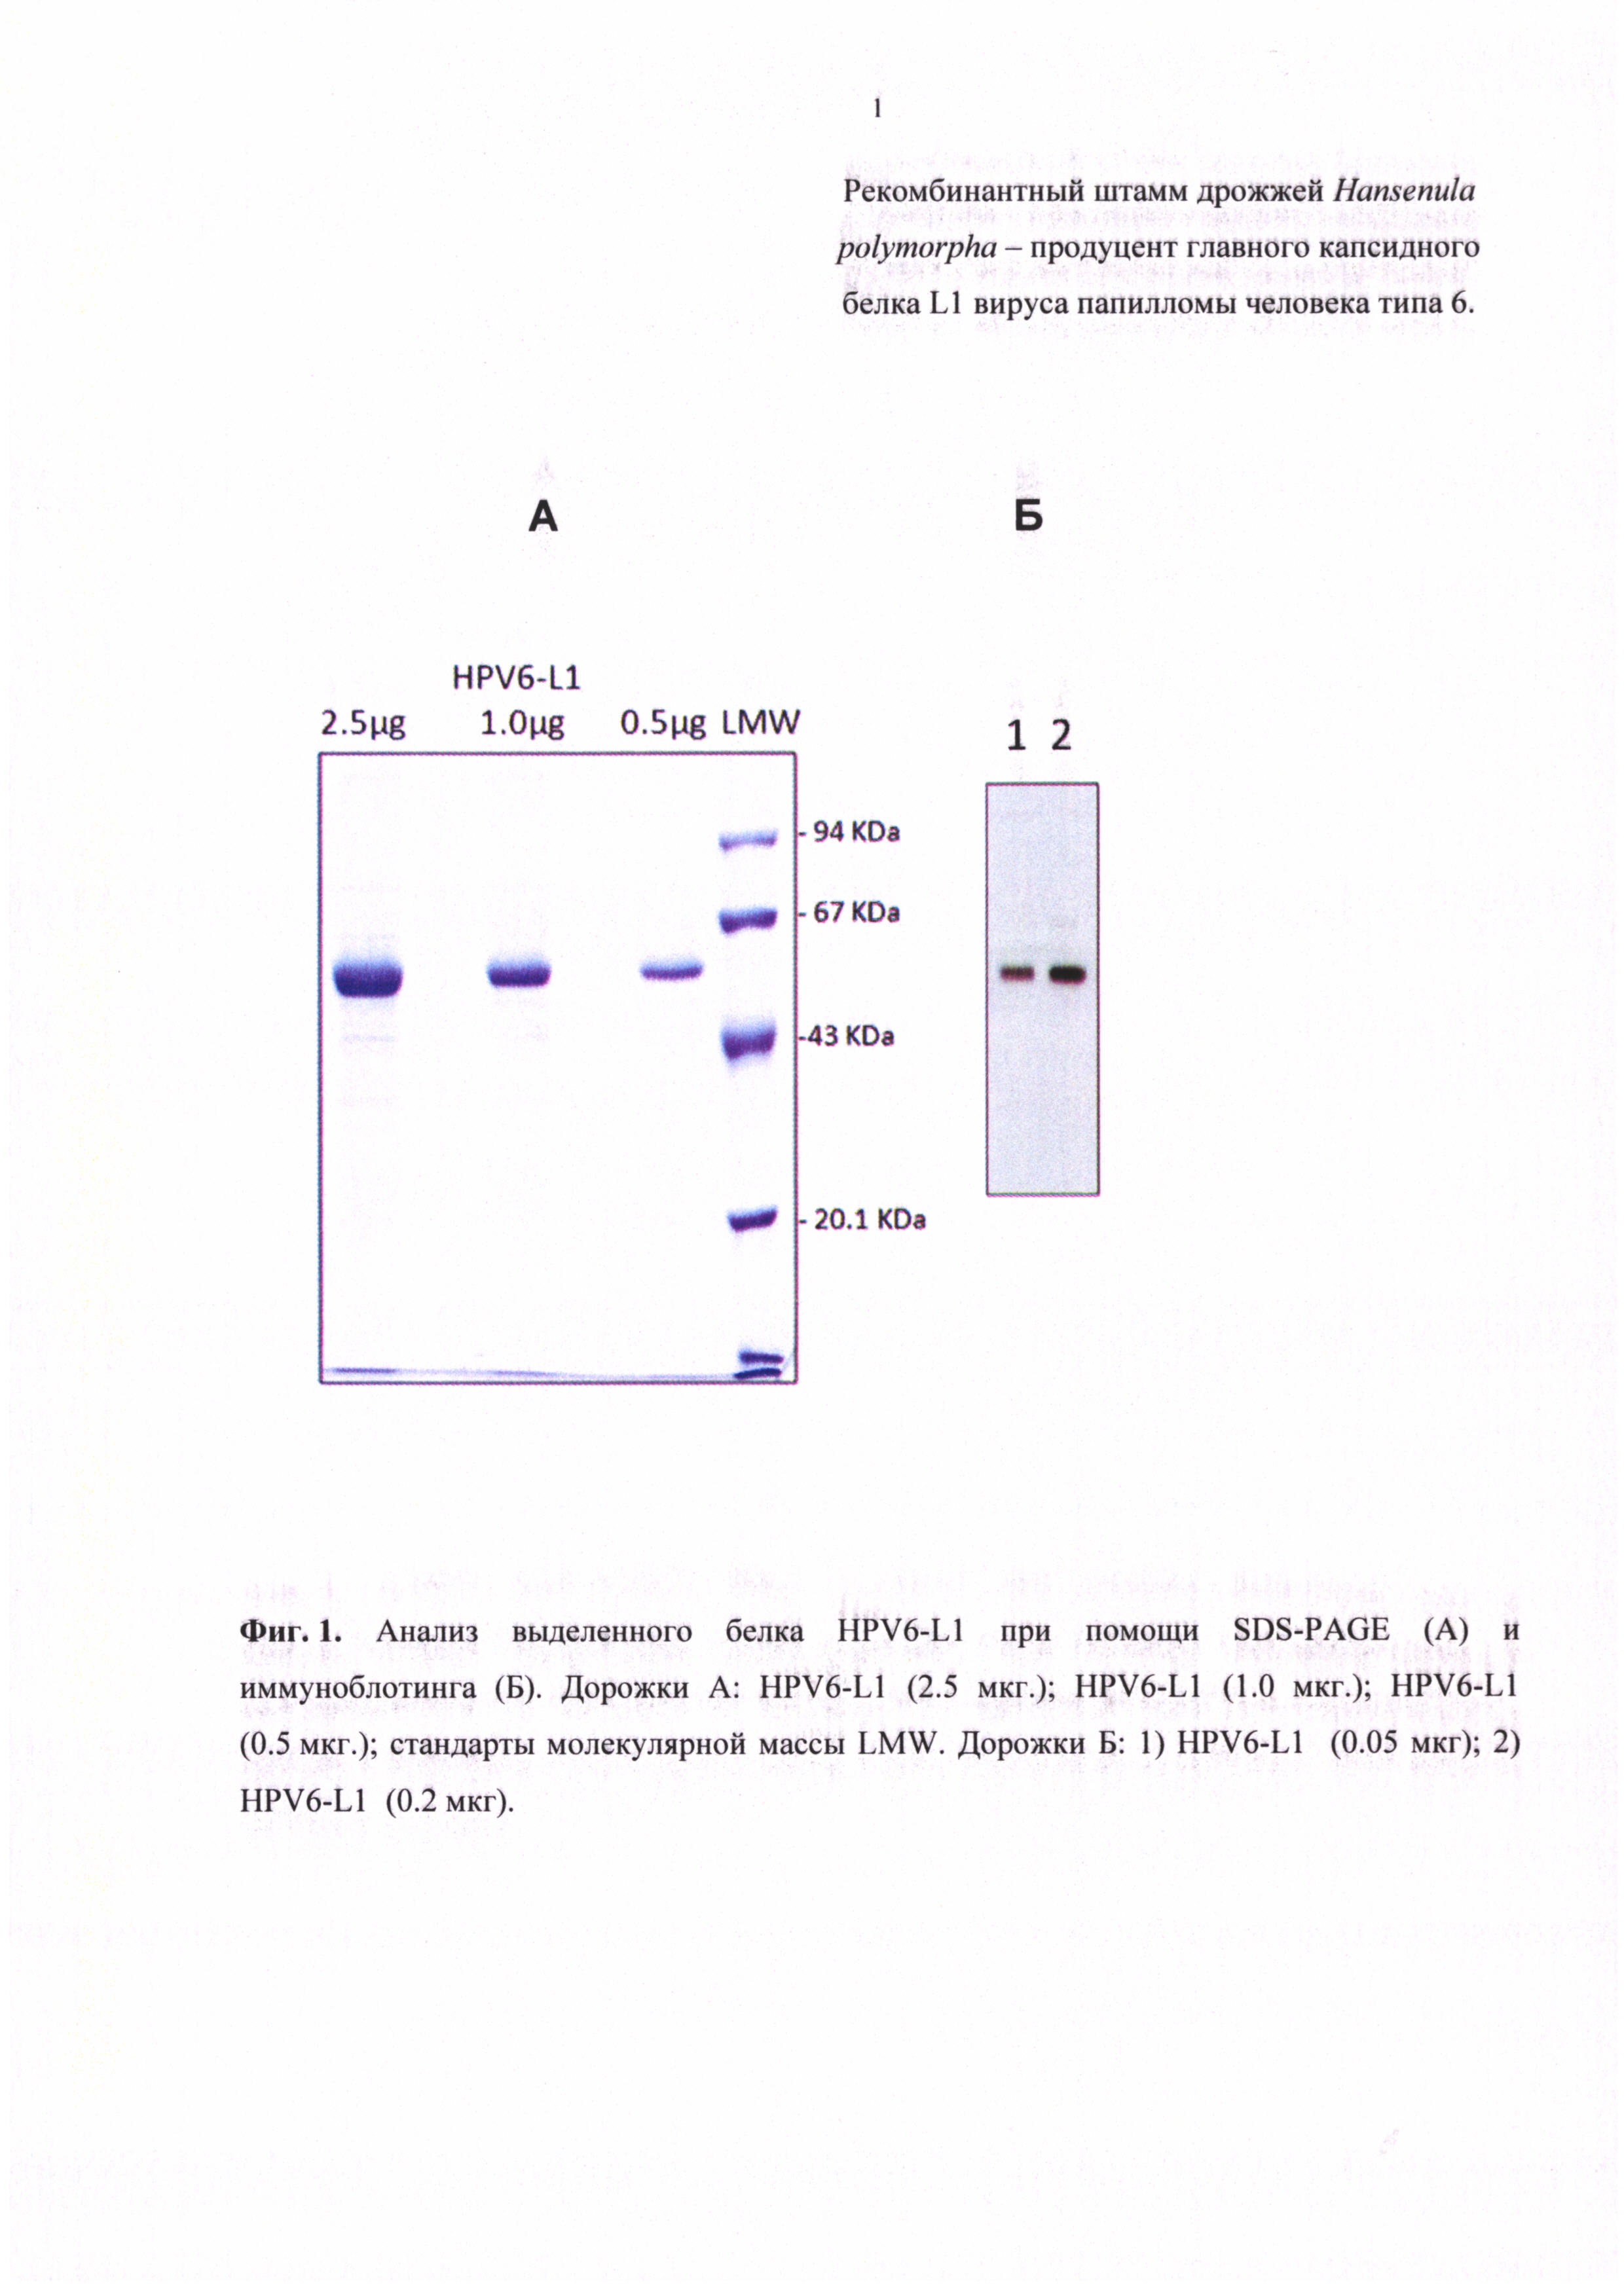 Рекомбинантный штамм дрожжей Hansenula polymorpha - продуцент главного капсидного белка L1 вируса папилломы человека типа 6